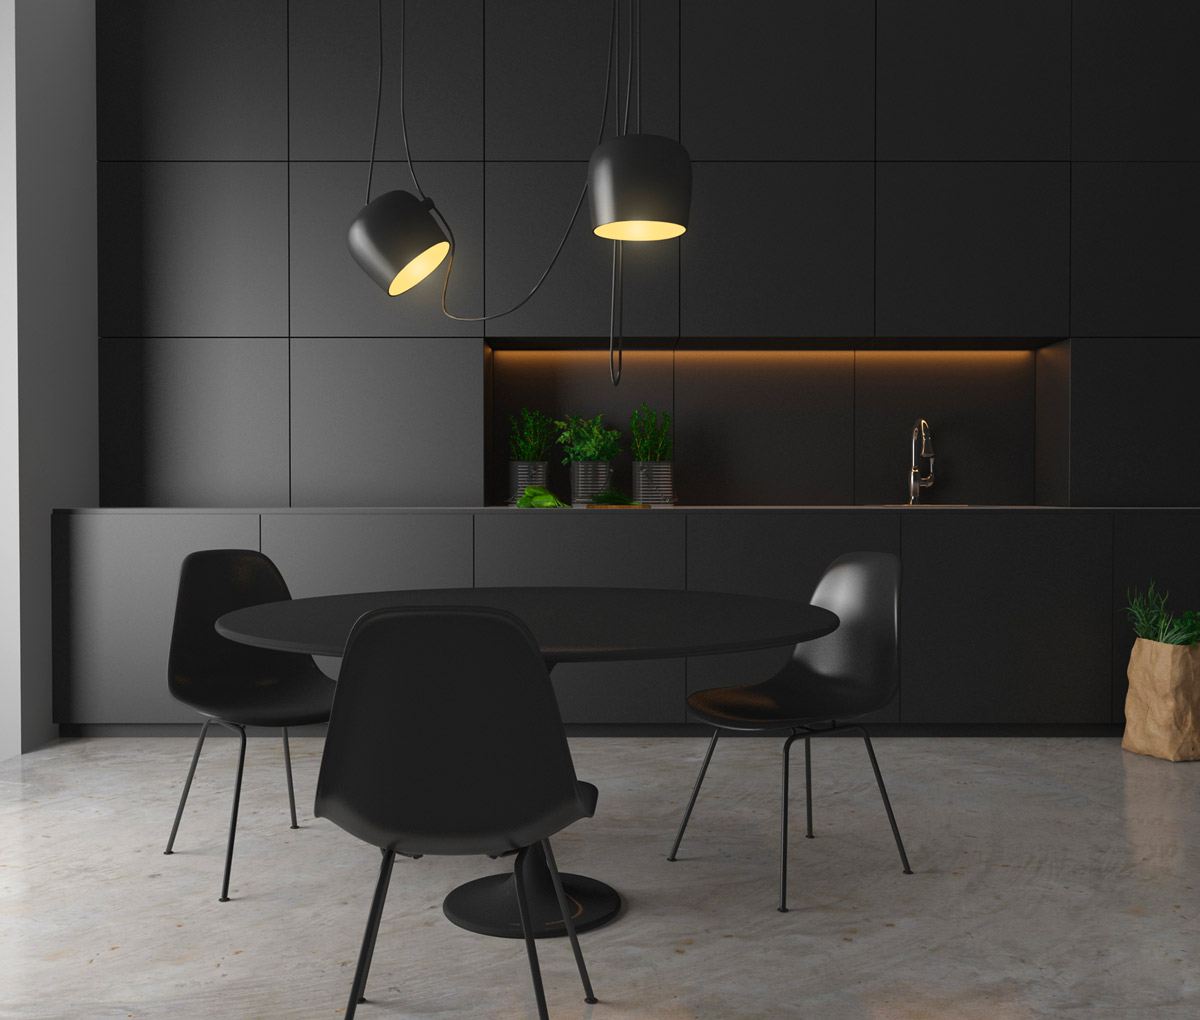 Dark Kitchen with Ambient Lighting